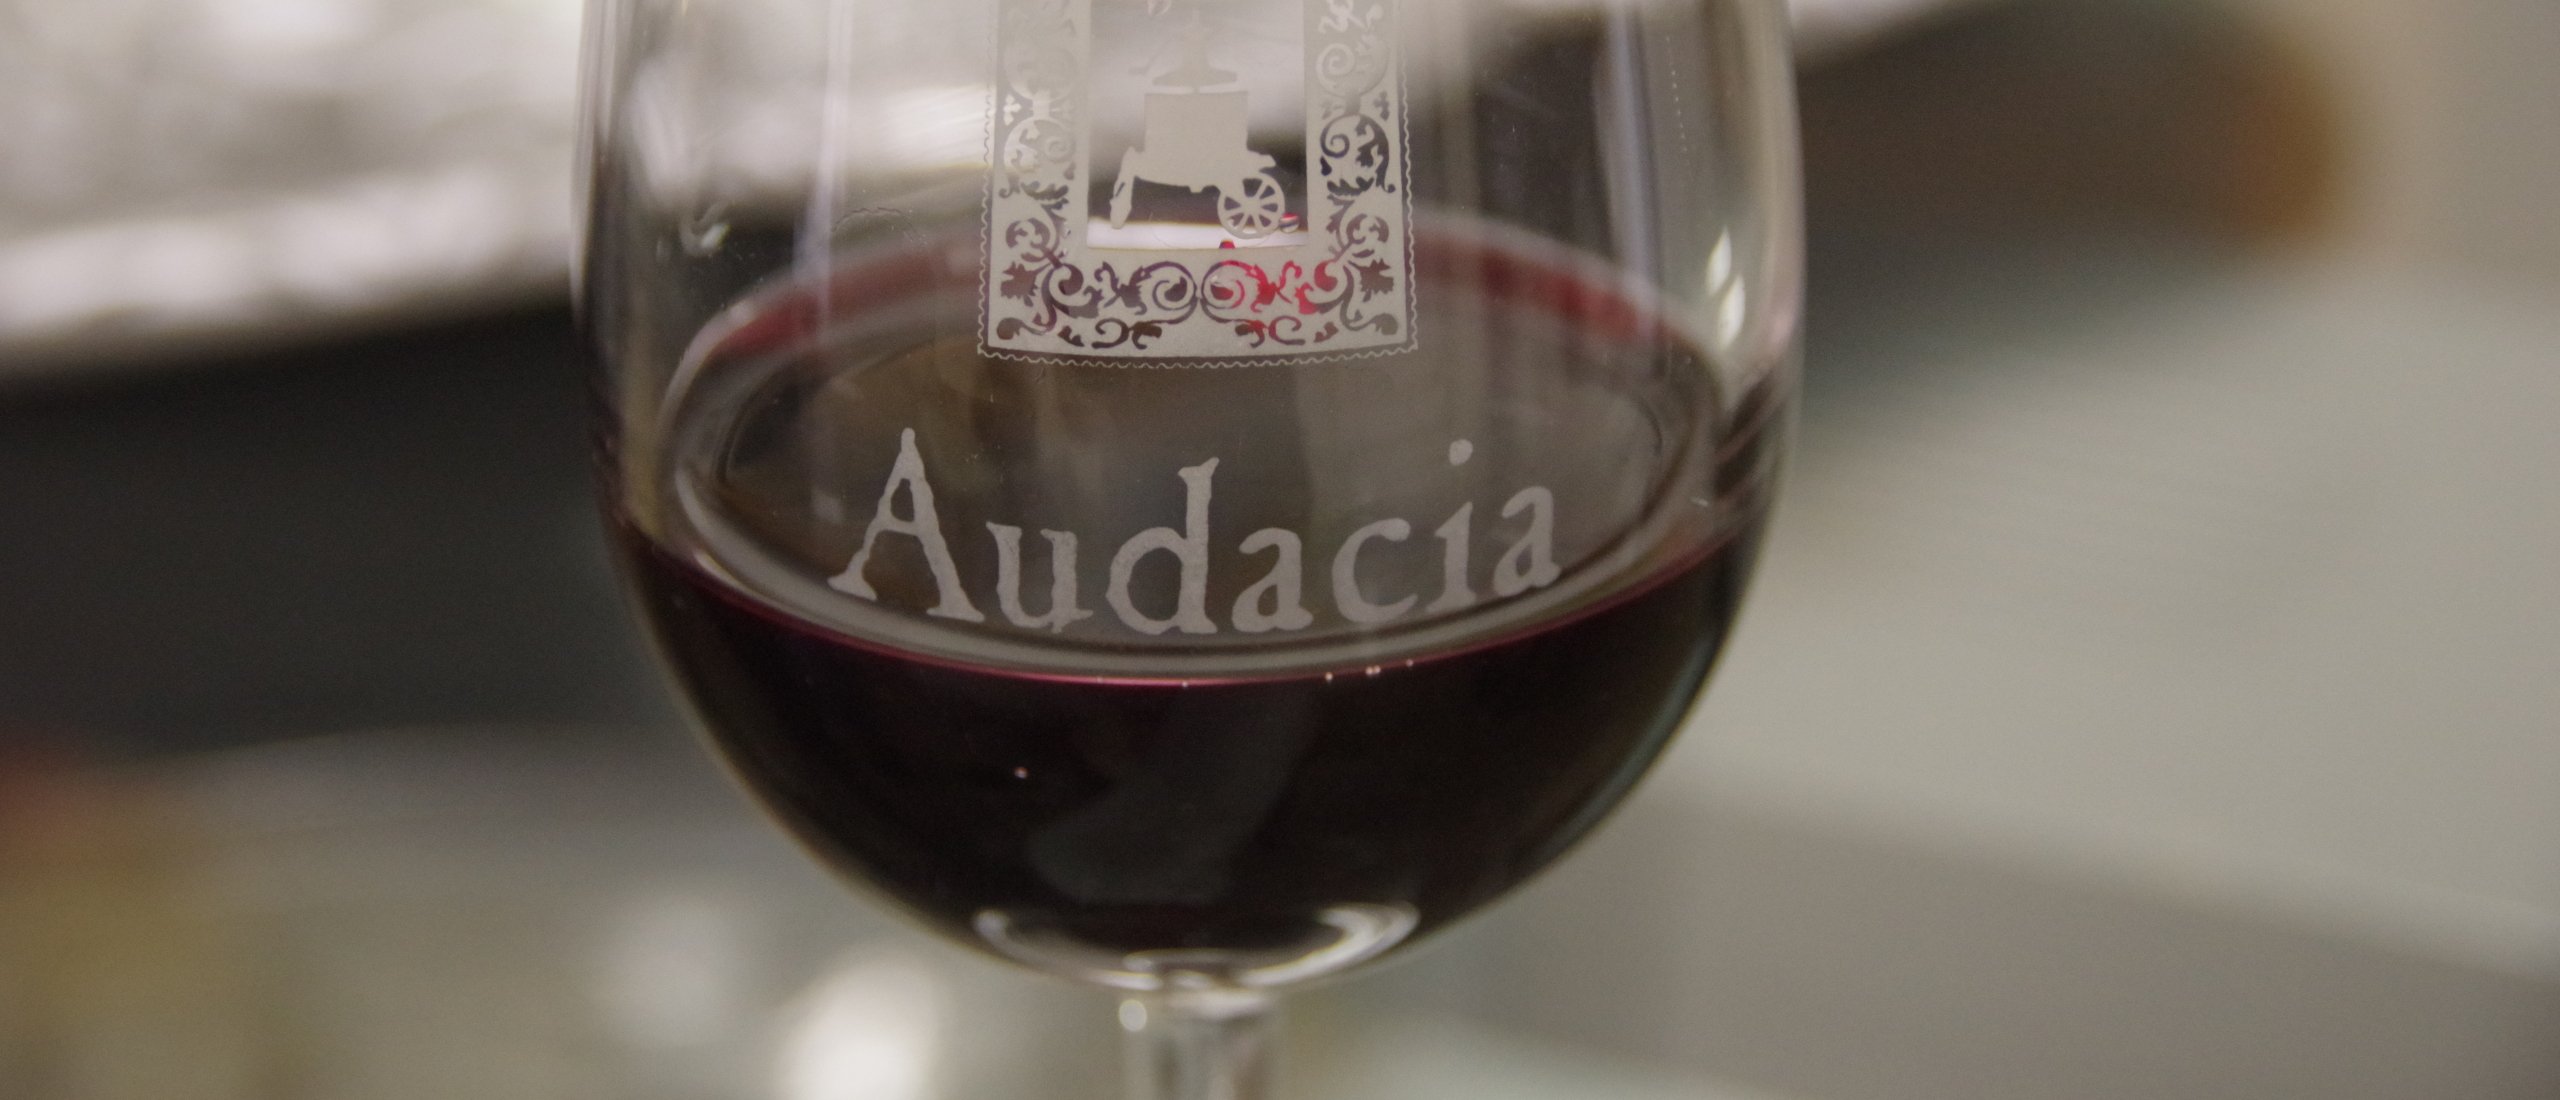 Audacia natuurlijke wijnen glas wijn